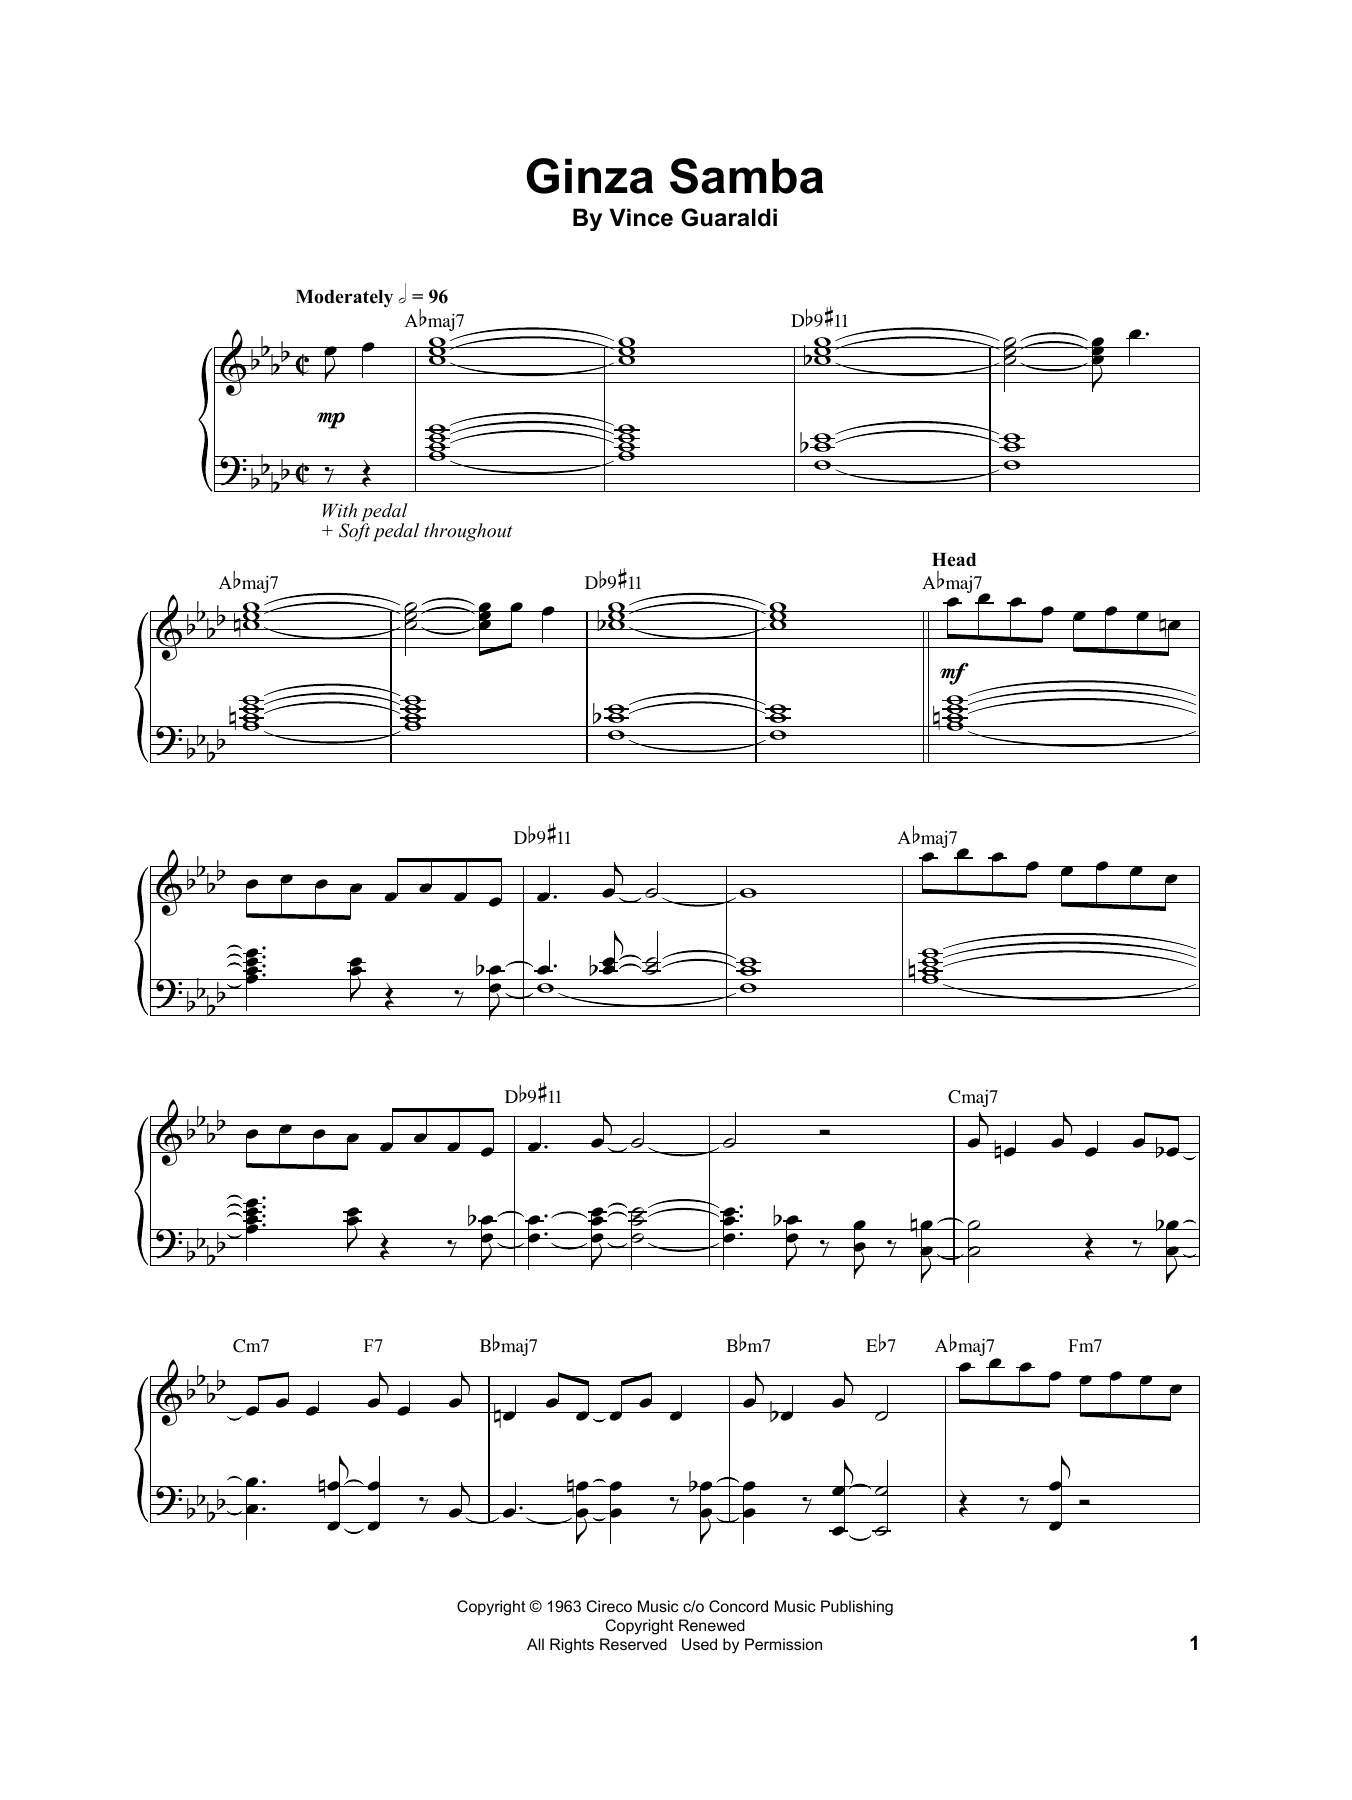 Vince Guaraldi Ginza Samba Sheet Music Notes & Chords for Real Book – Melody & Chords - Download or Print PDF